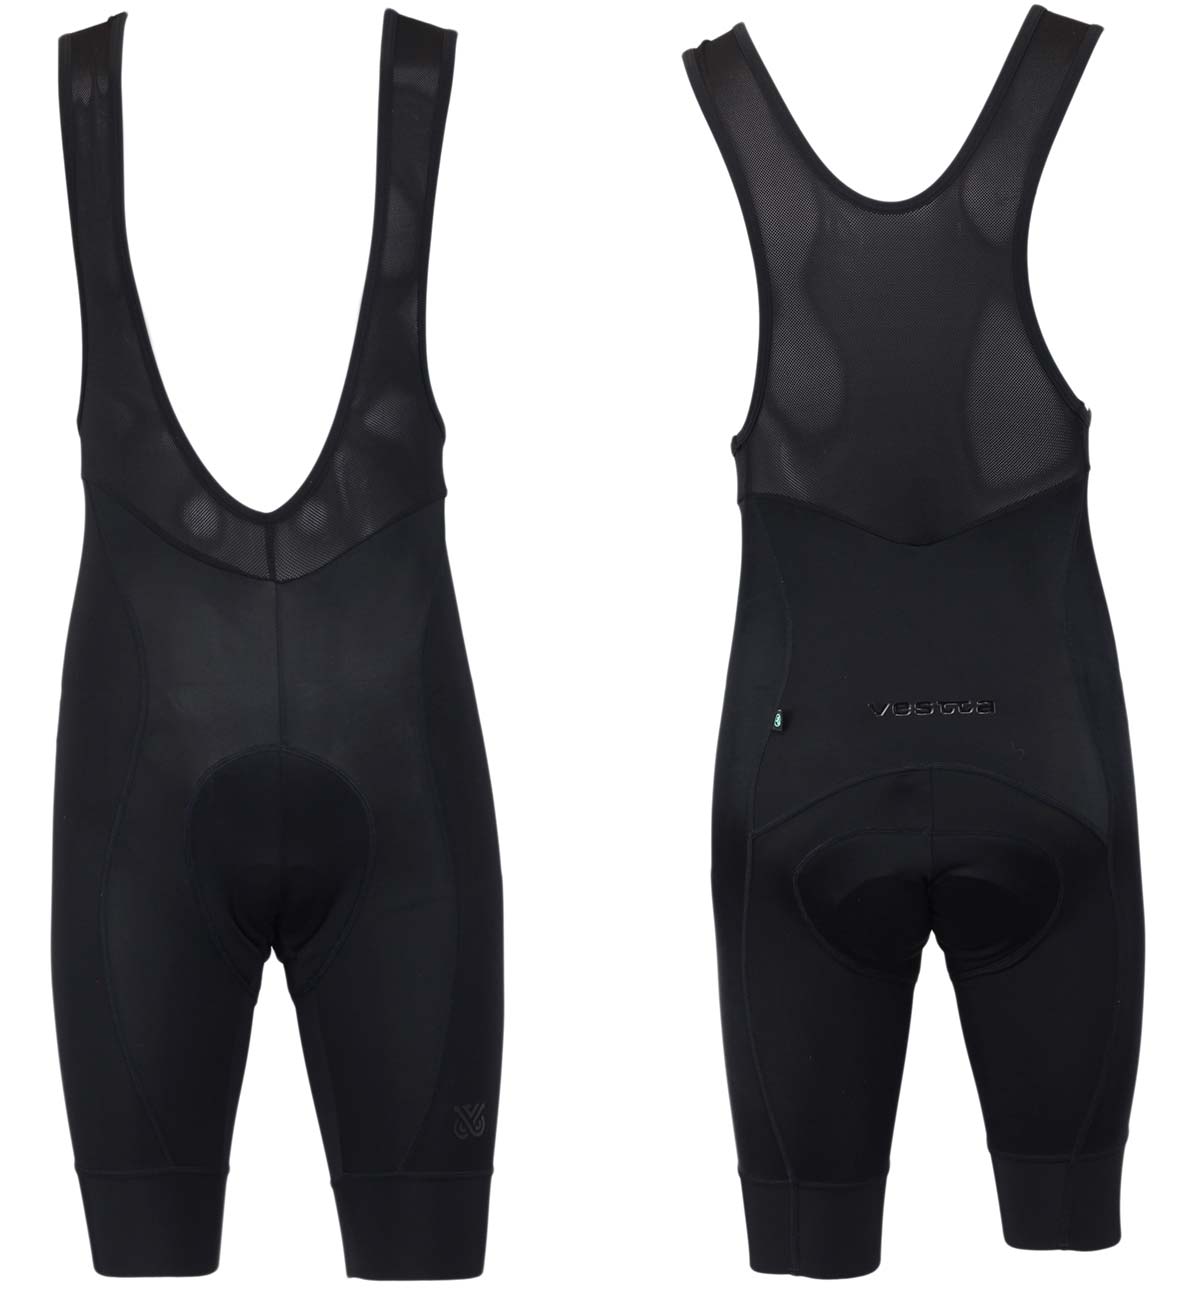 En TodoMountainBike: Decathlon presenta la colección de ropa para ciclismo Vestta con opciones de personalización